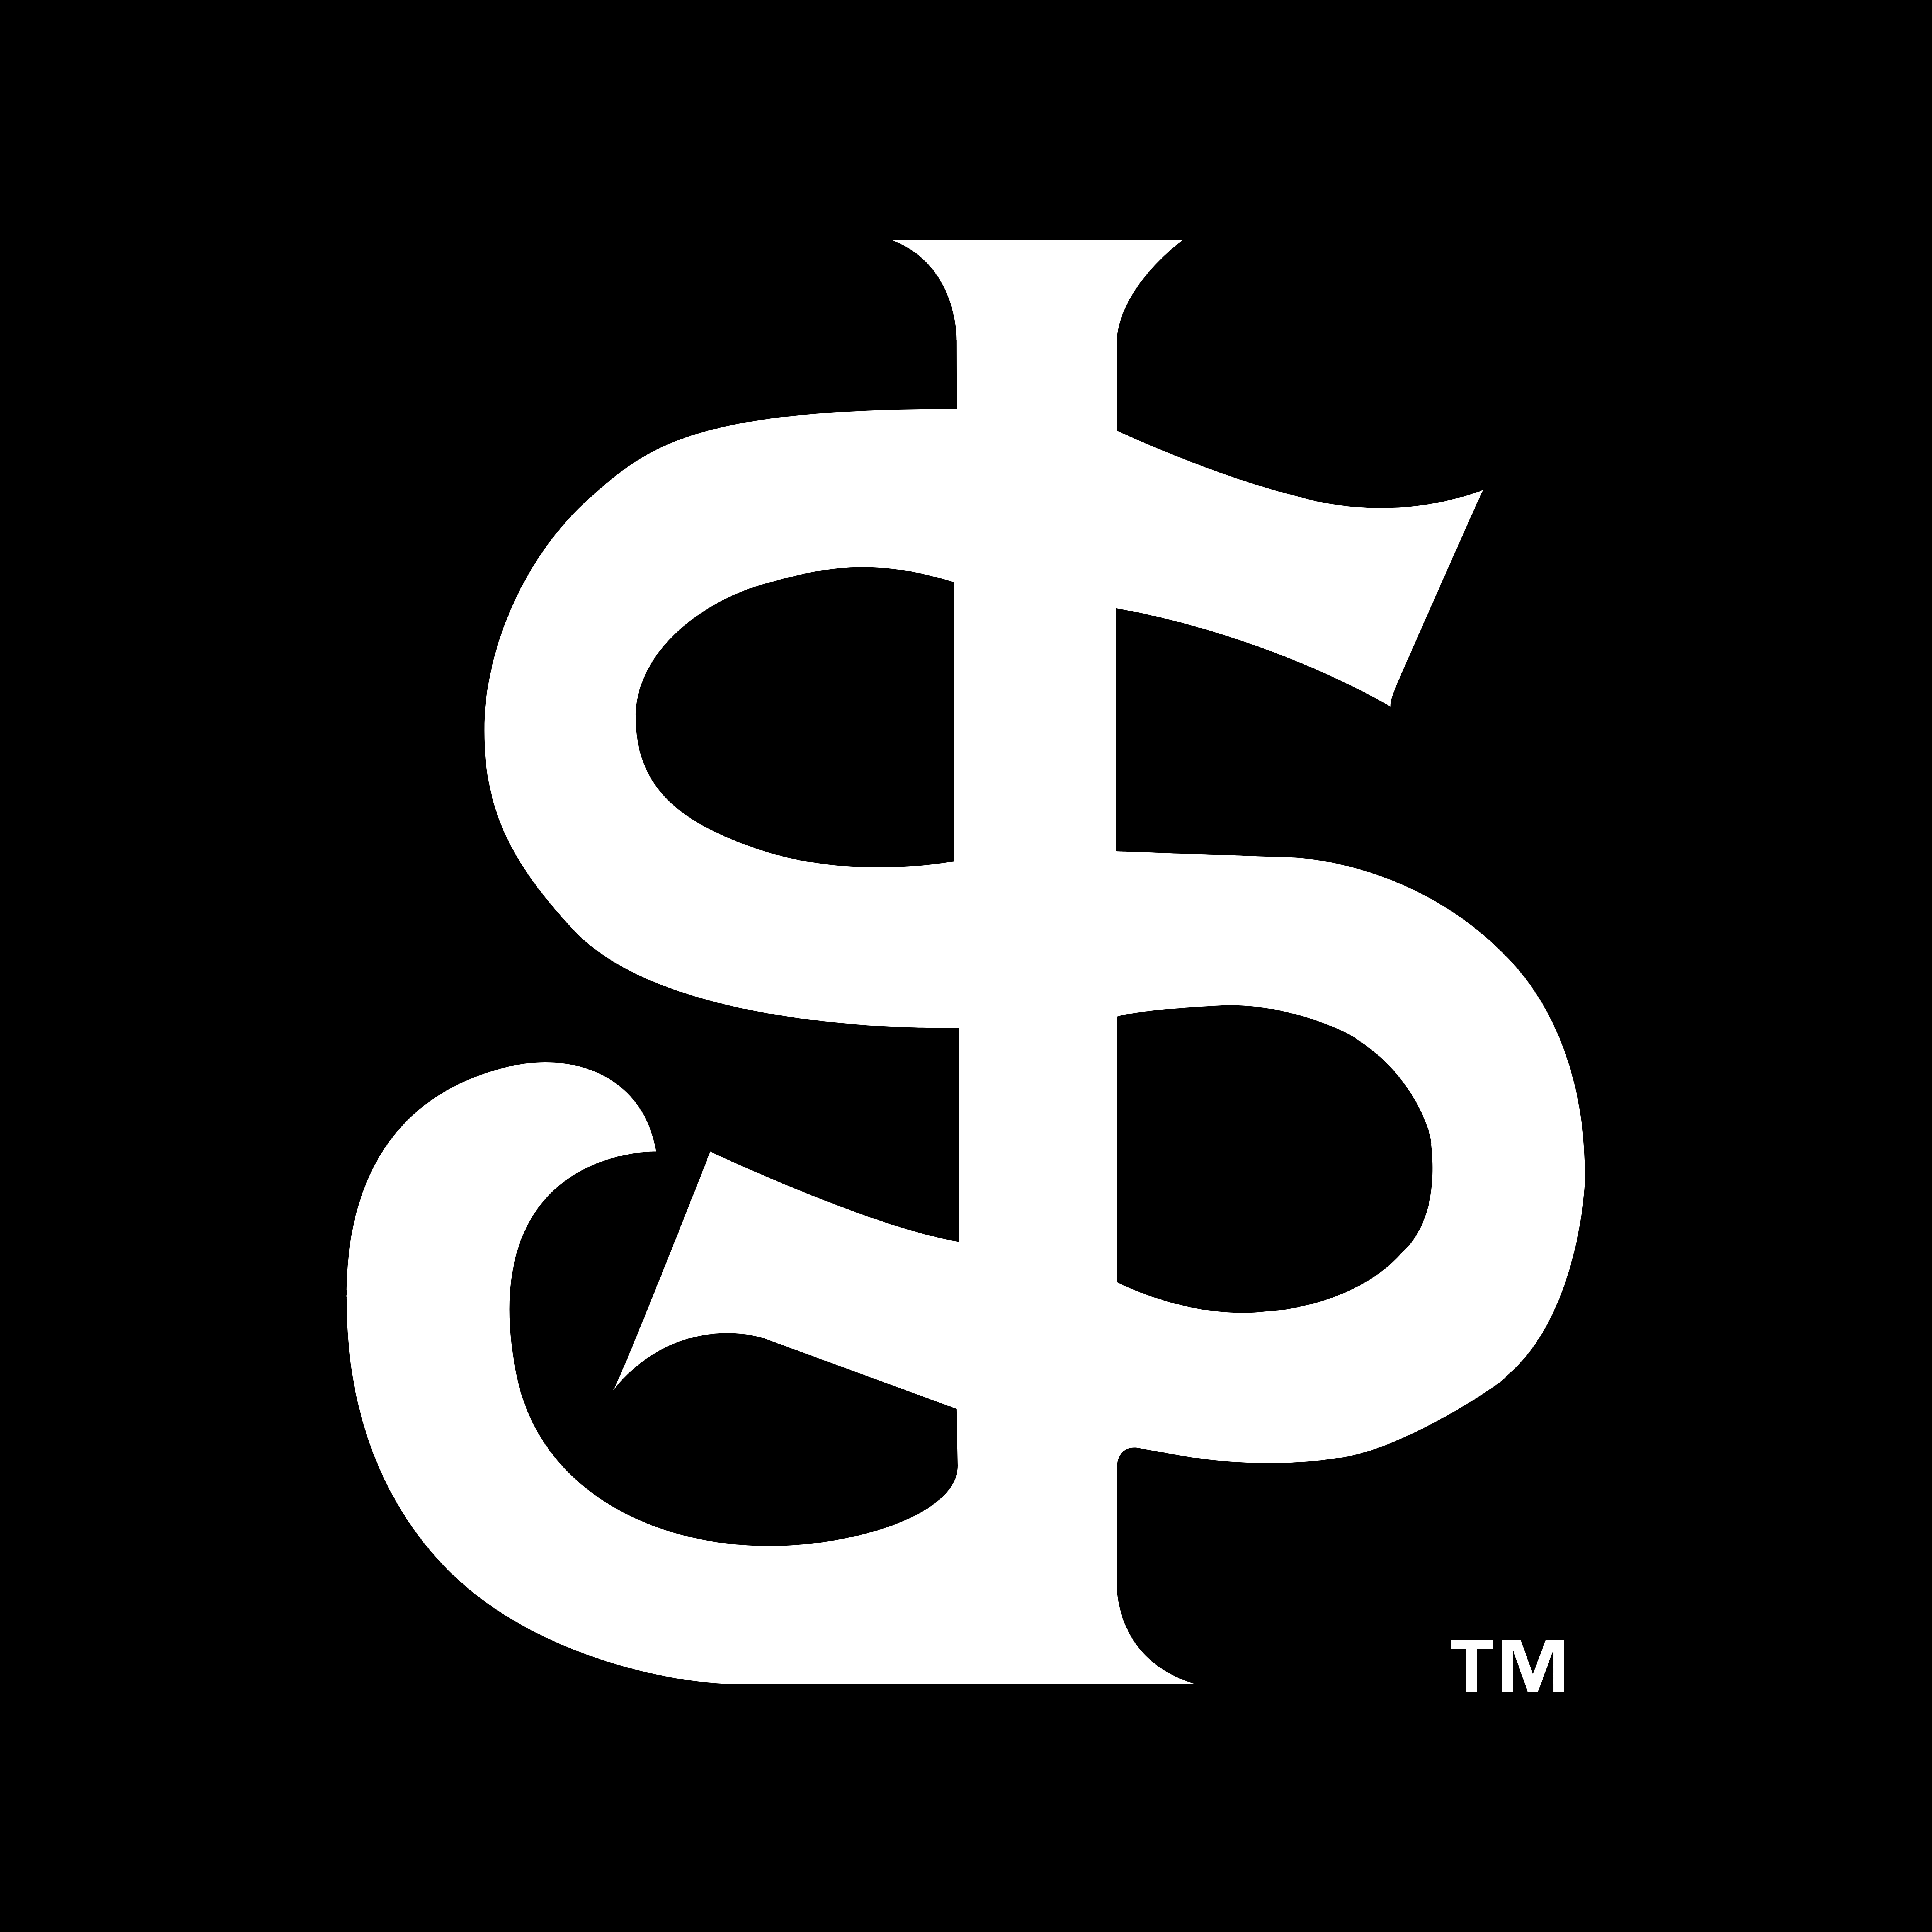 San Jose Giants – Logos Download